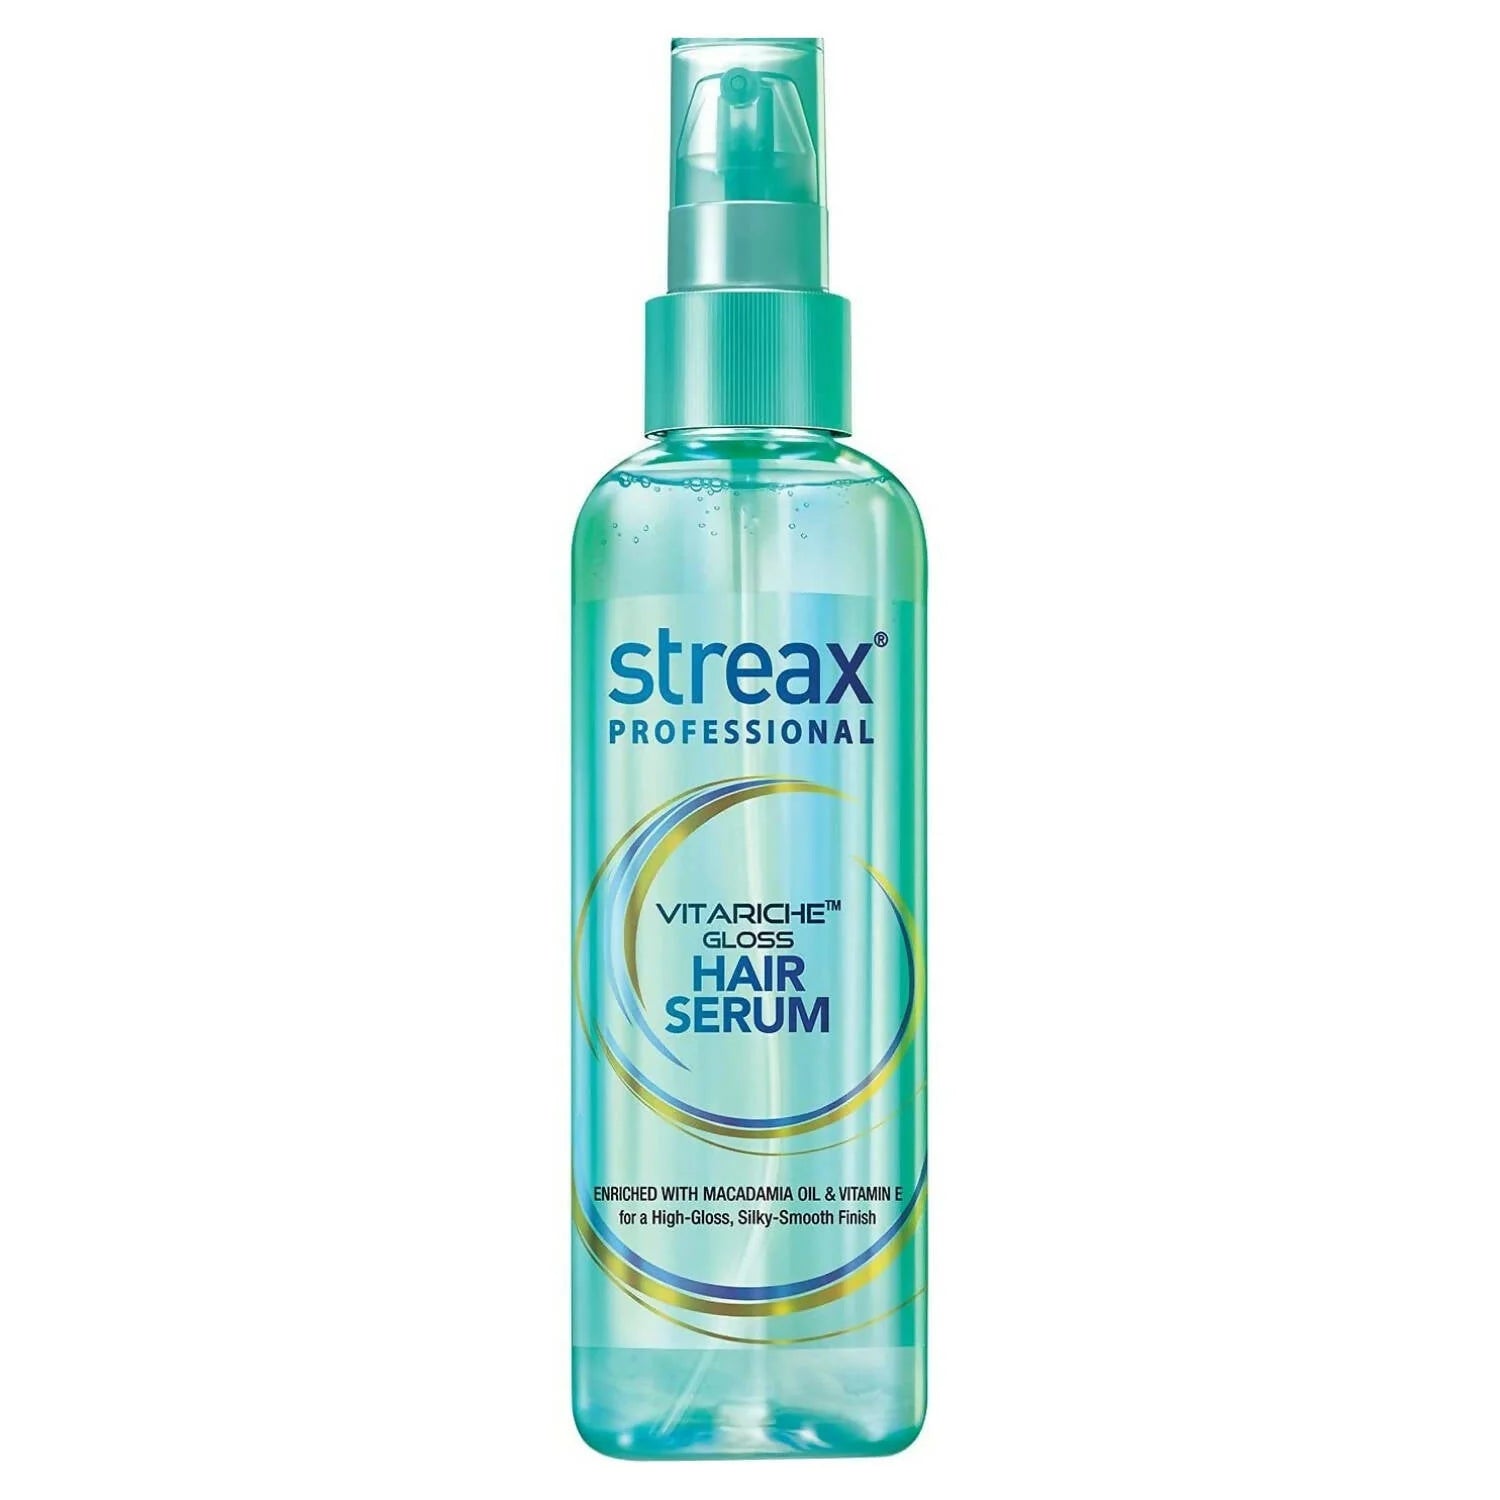 Streax Professional Vitariche Gloss Hair Serum